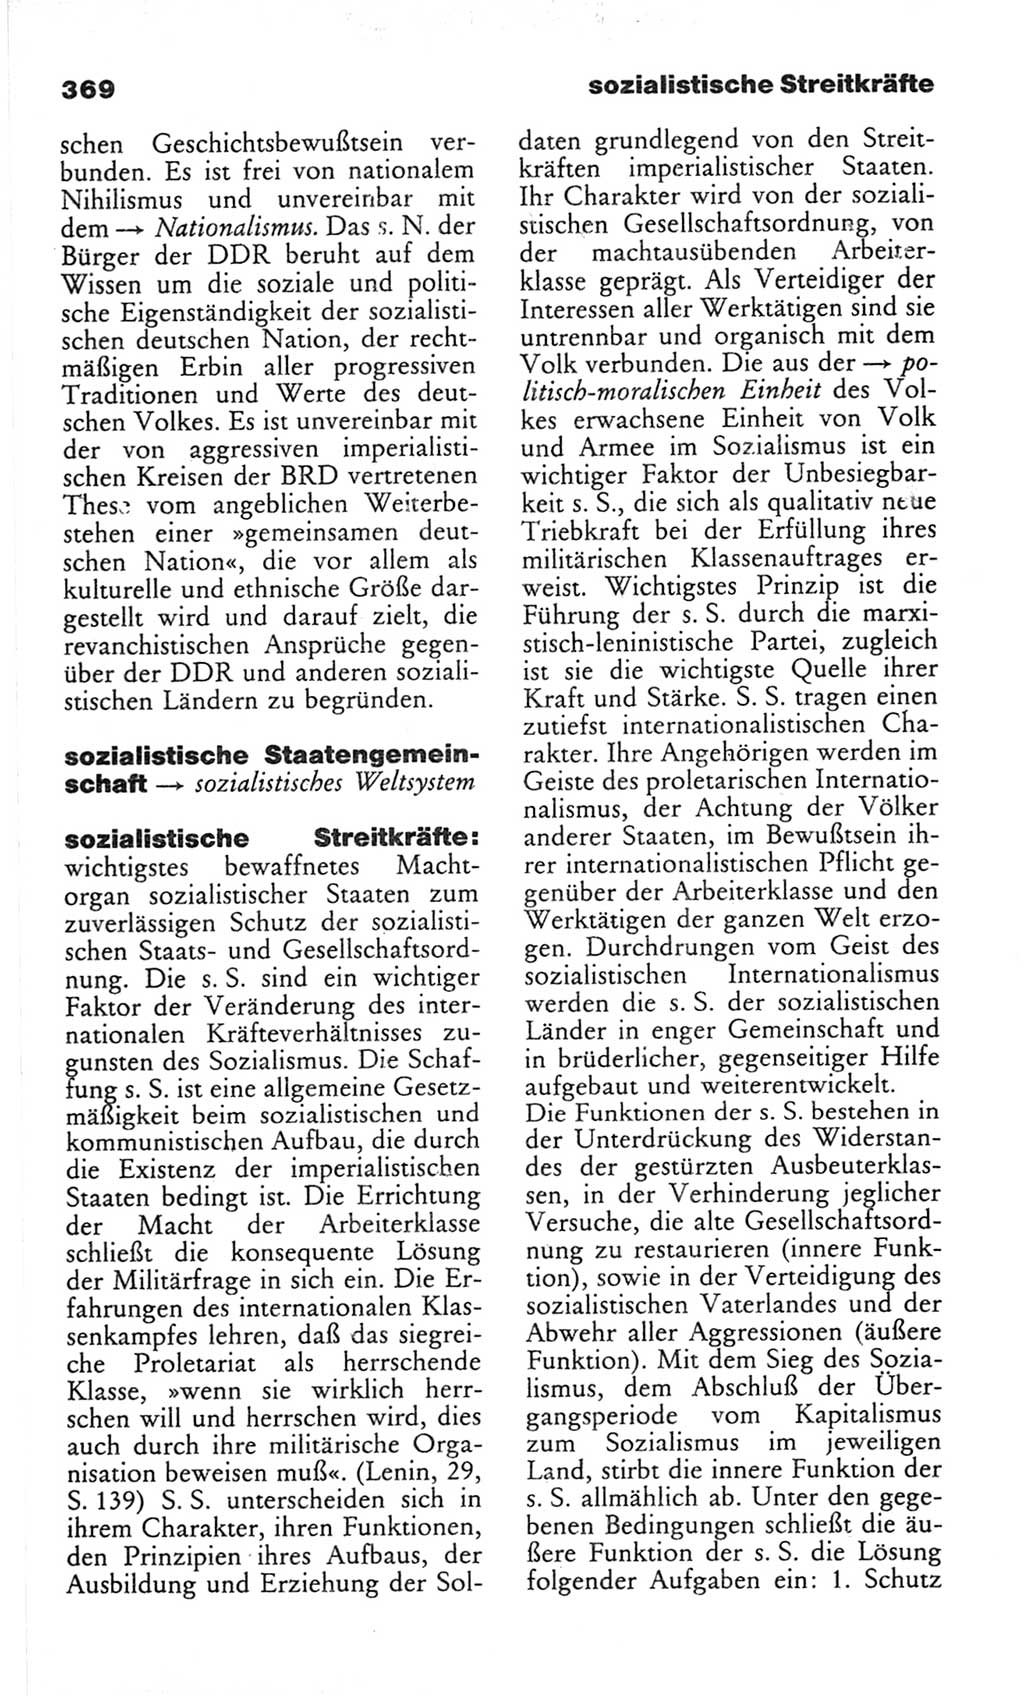 Wörterbuch des wissenschaftlichen Kommunismus [Deutsche Demokratische Republik (DDR)] 1982, Seite 369 (Wb. wiss. Komm. DDR 1982, S. 369)